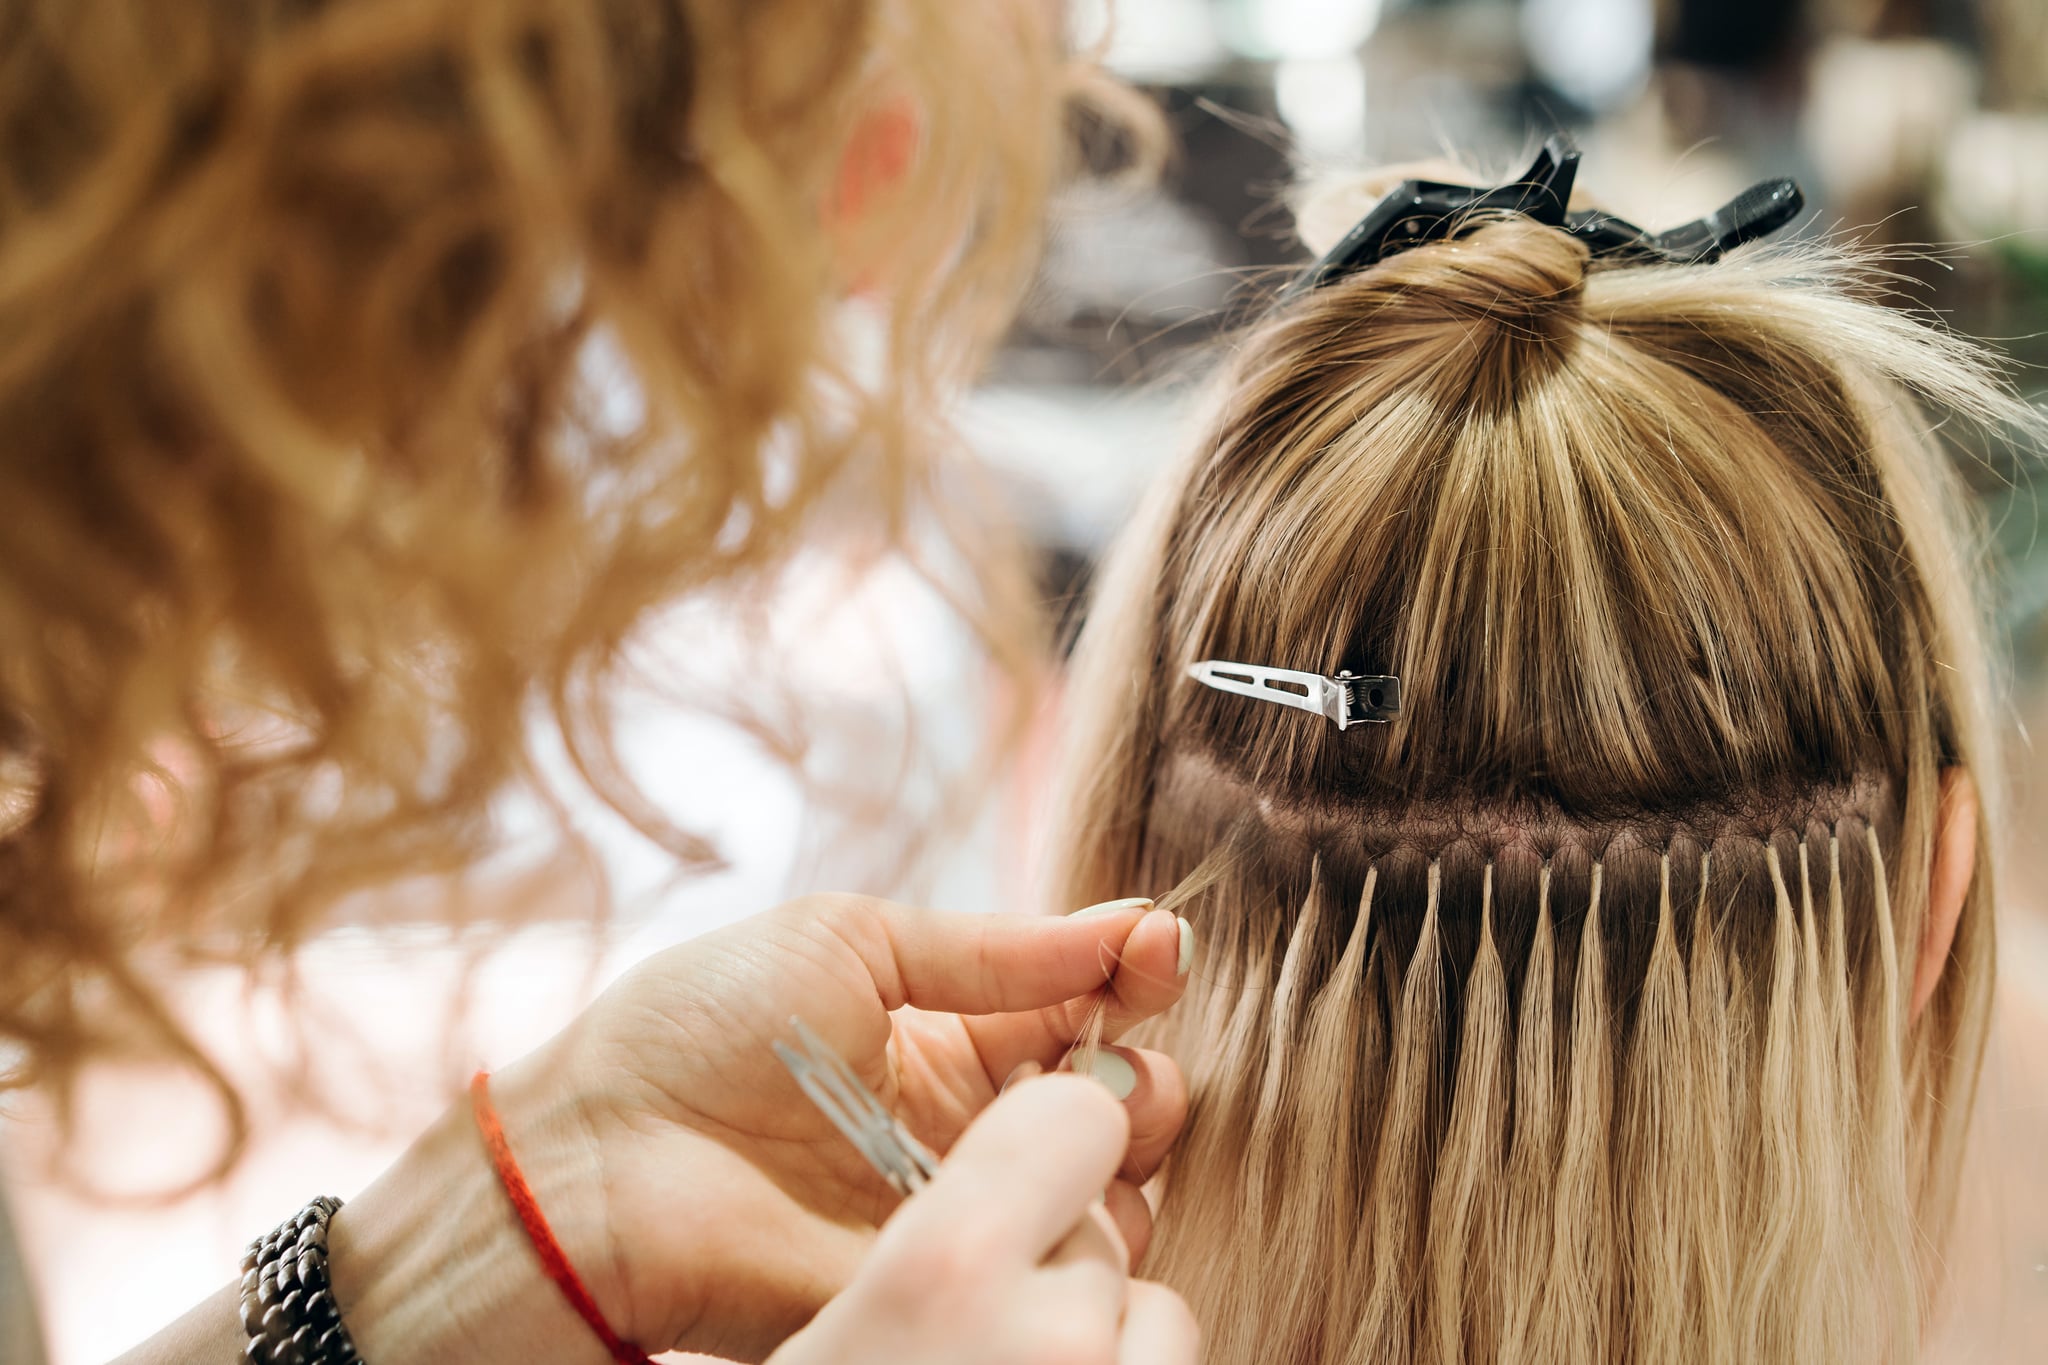 Vanaf daar Gehoorzaam gevogelte Hair Extensions: Types, Cost, Care, and More | POPSUGAR Beauty